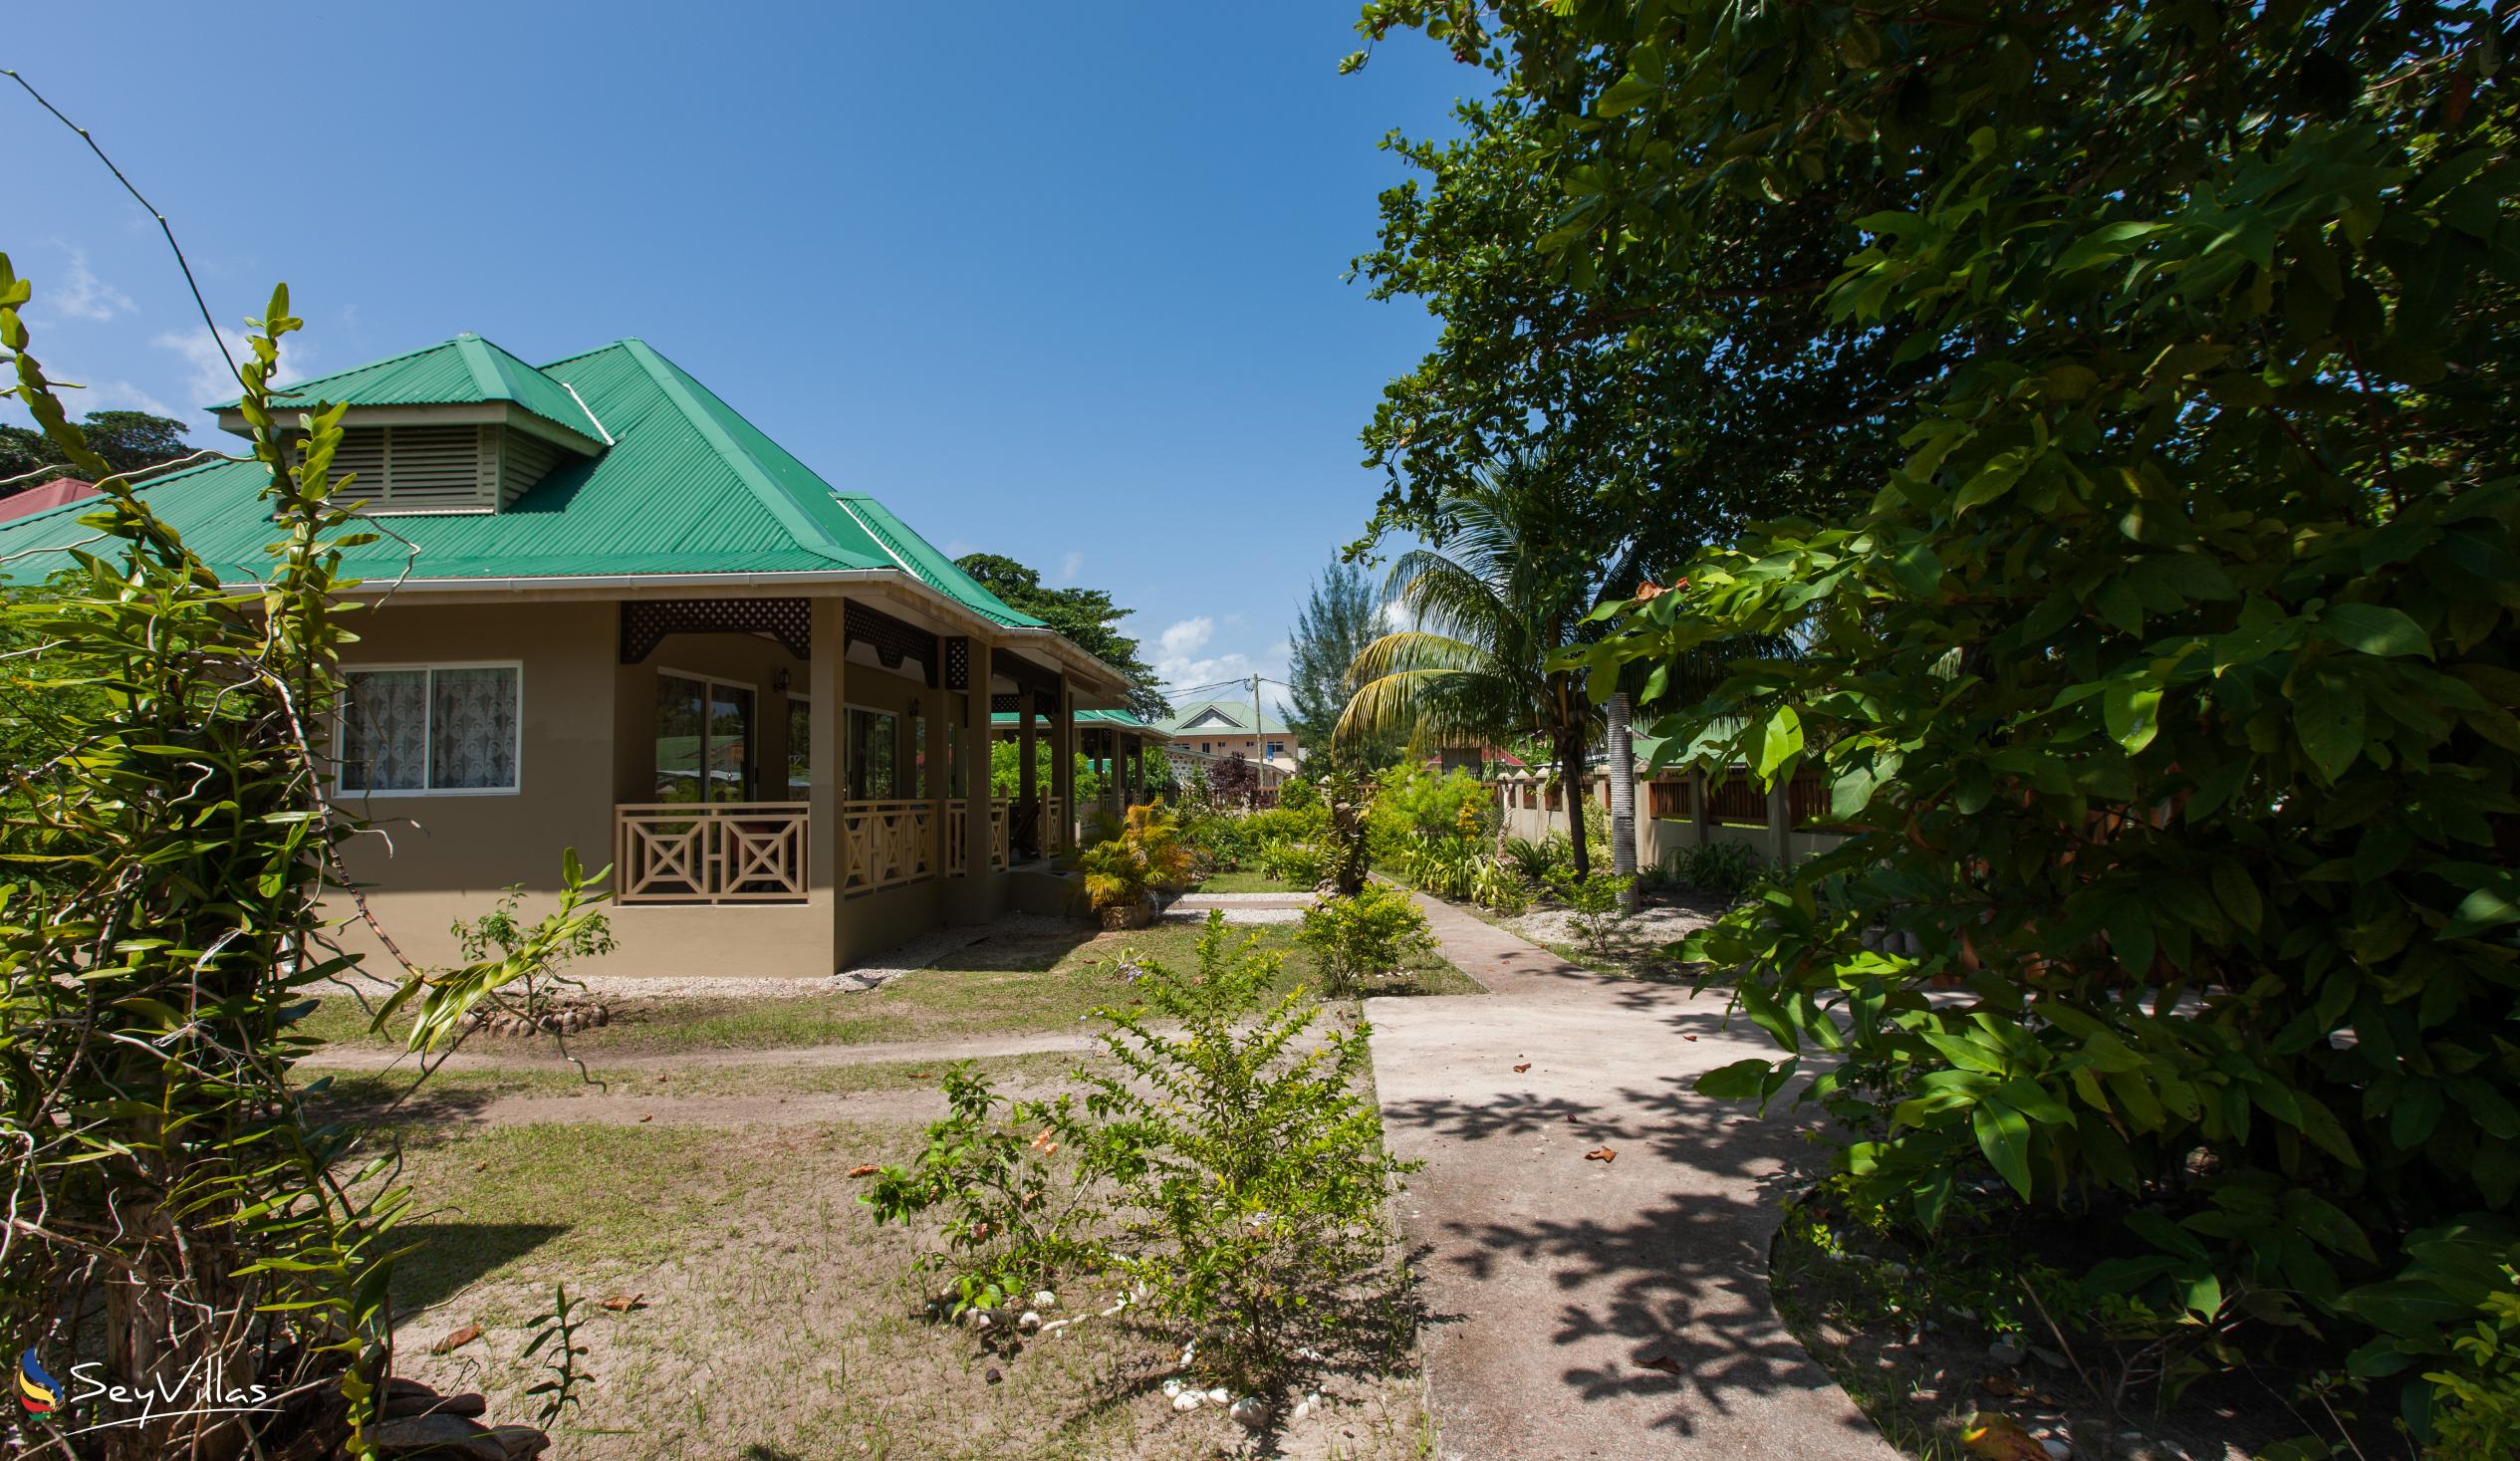 Photo 86: Hostellerie La Digue - Outdoor area - La Digue (Seychelles)